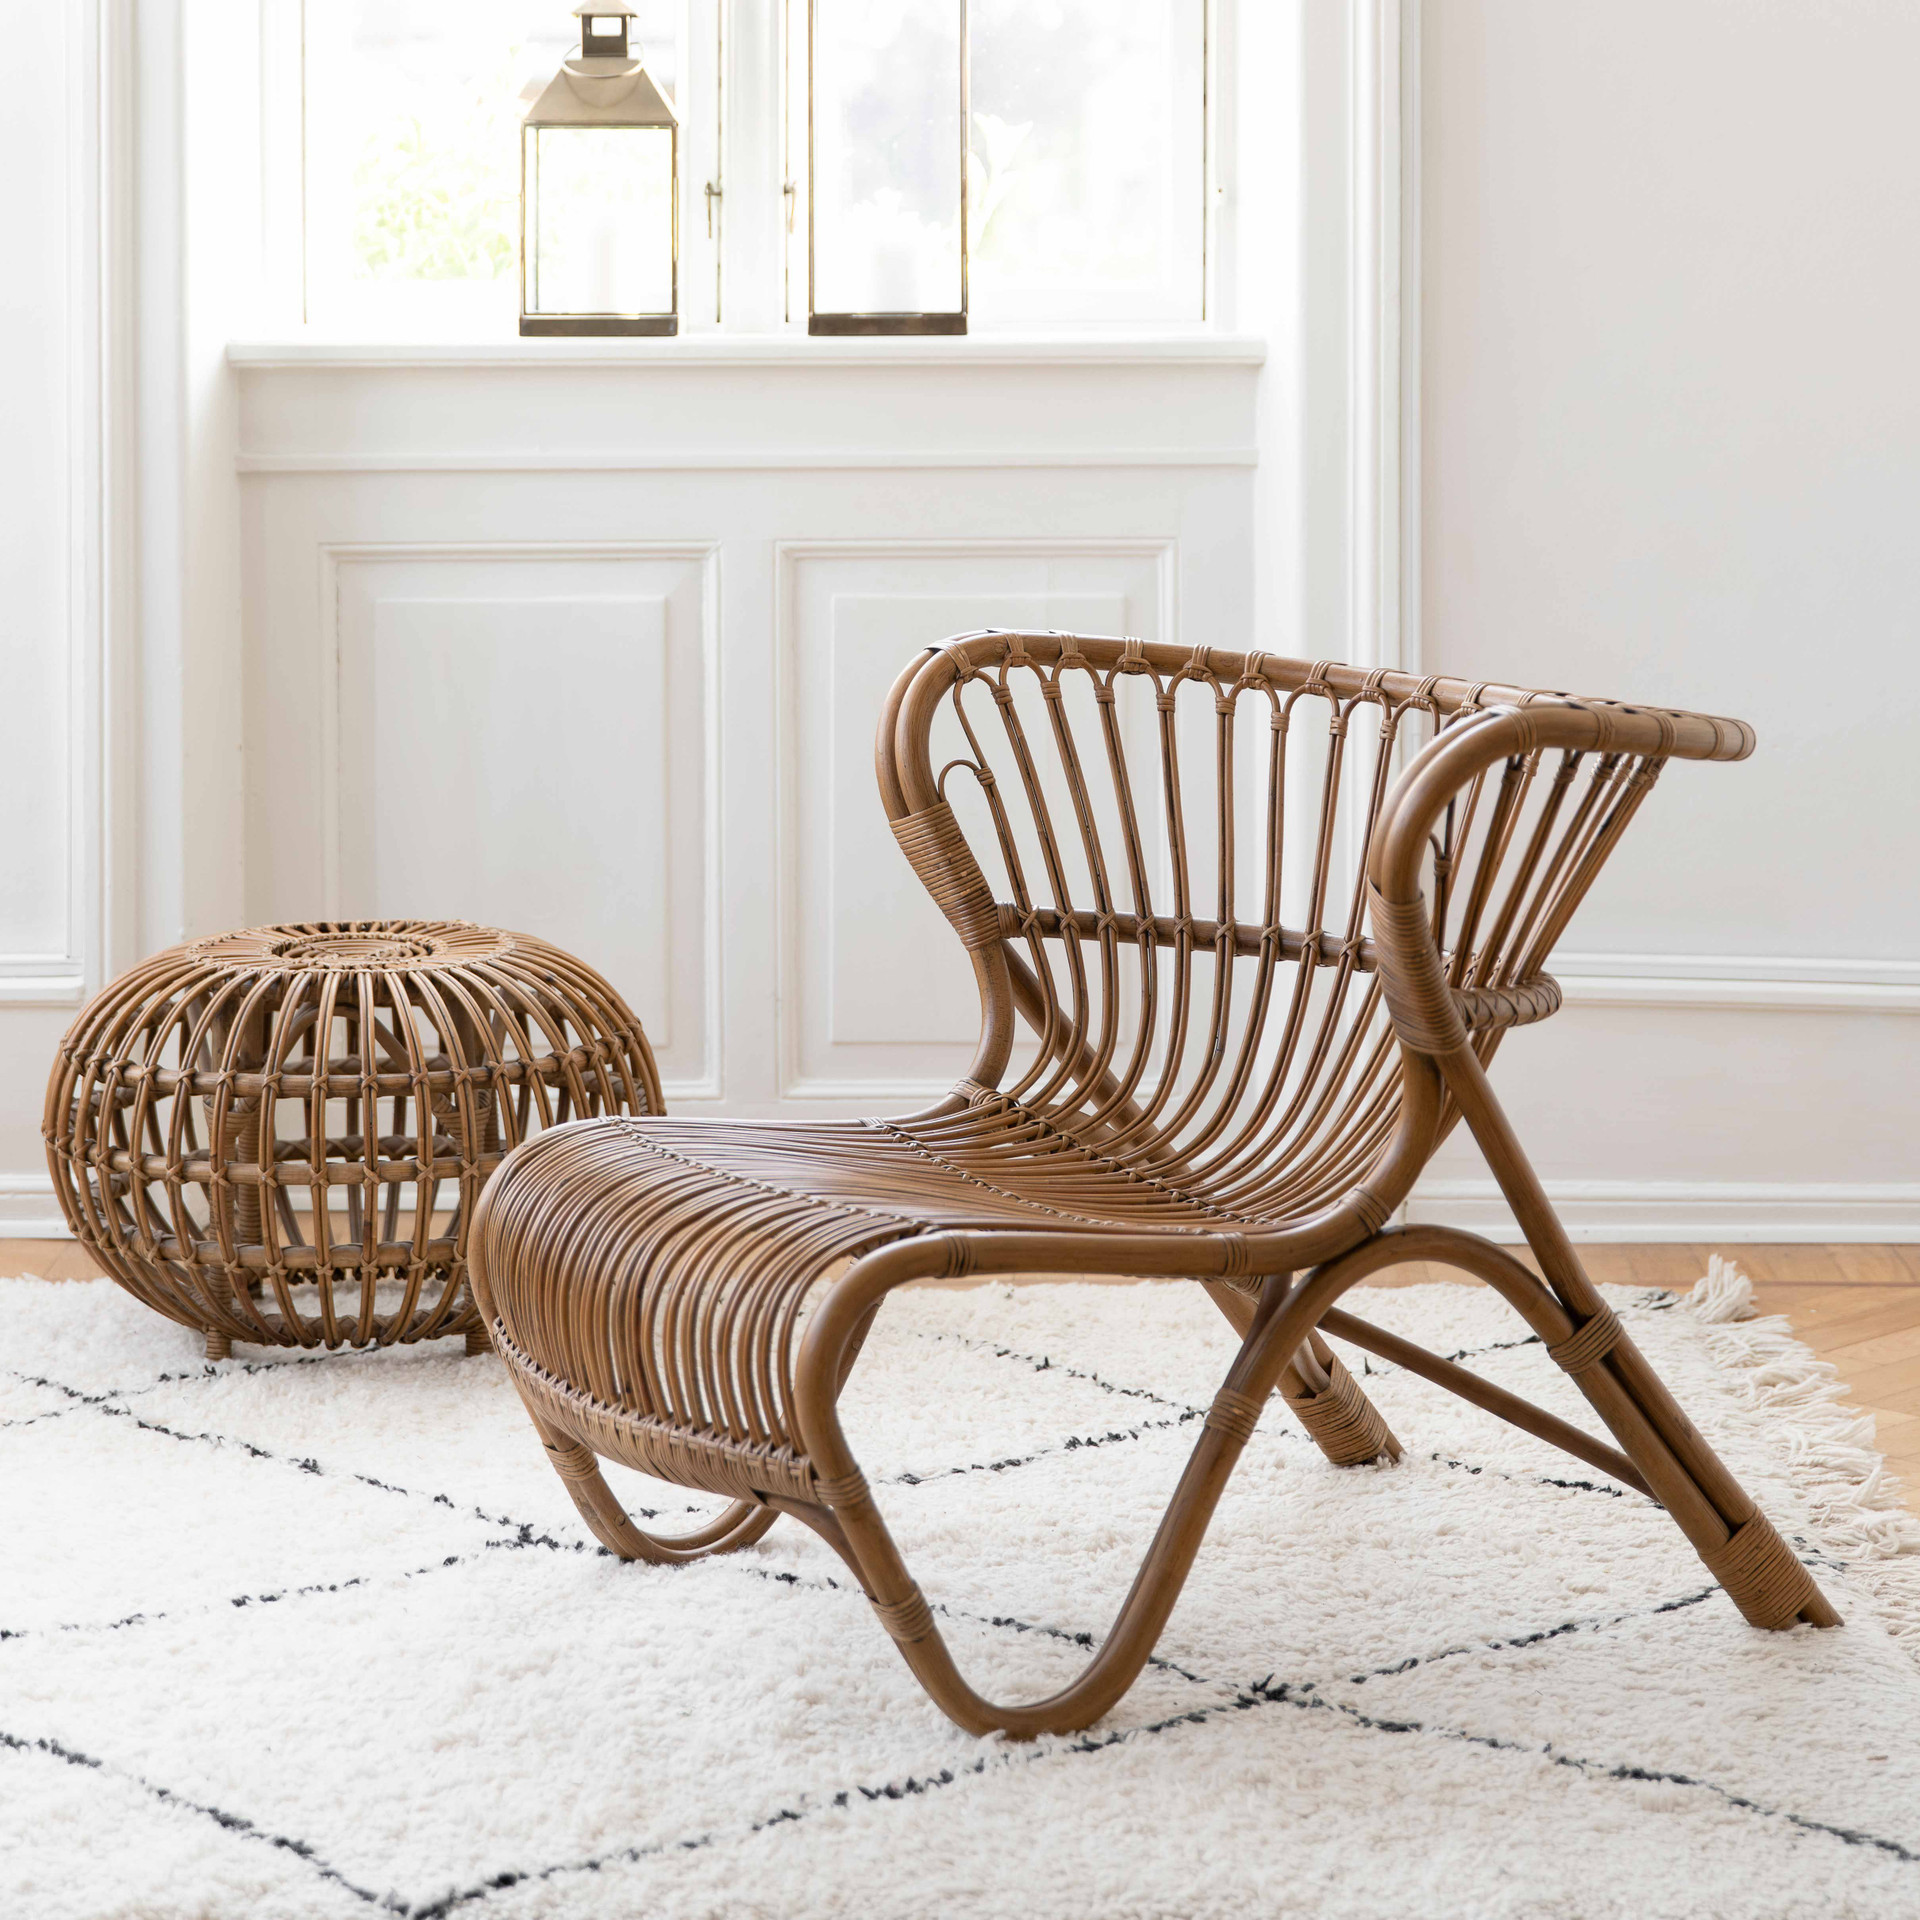 Sika Design Viggo Boesen Fox Chair Rattan Lounge Chair